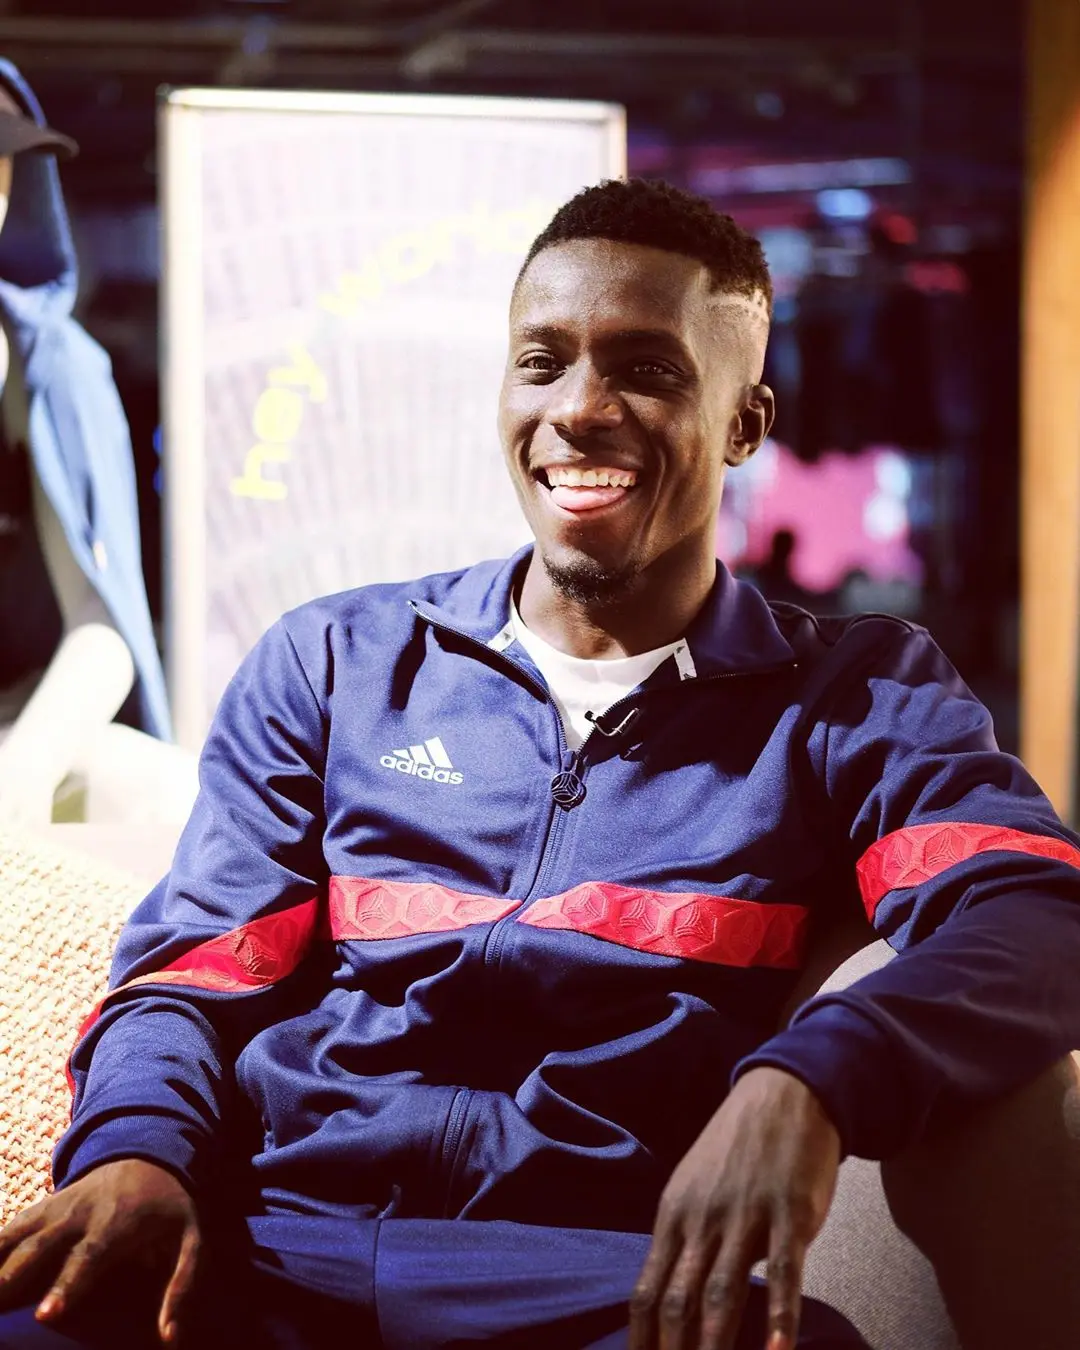 Vidéo : voici le Trou Story d’Idrissa Gueye